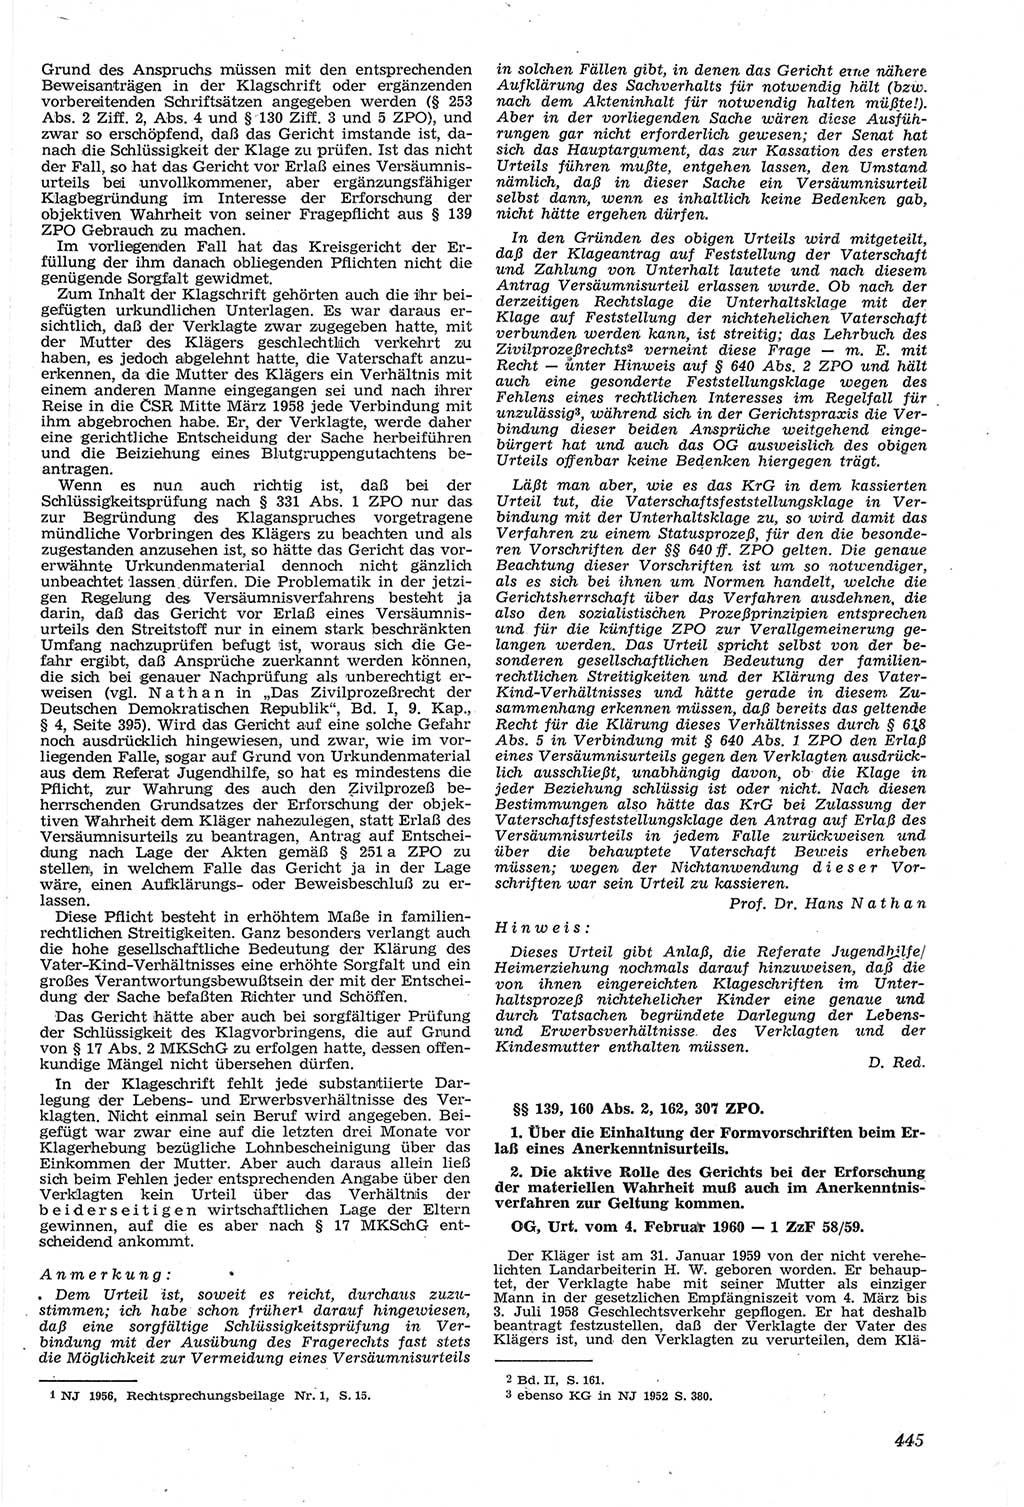 Neue Justiz (NJ), Zeitschrift für Recht und Rechtswissenschaft [Deutsche Demokratische Republik (DDR)], 14. Jahrgang 1960, Seite 445 (NJ DDR 1960, S. 445)